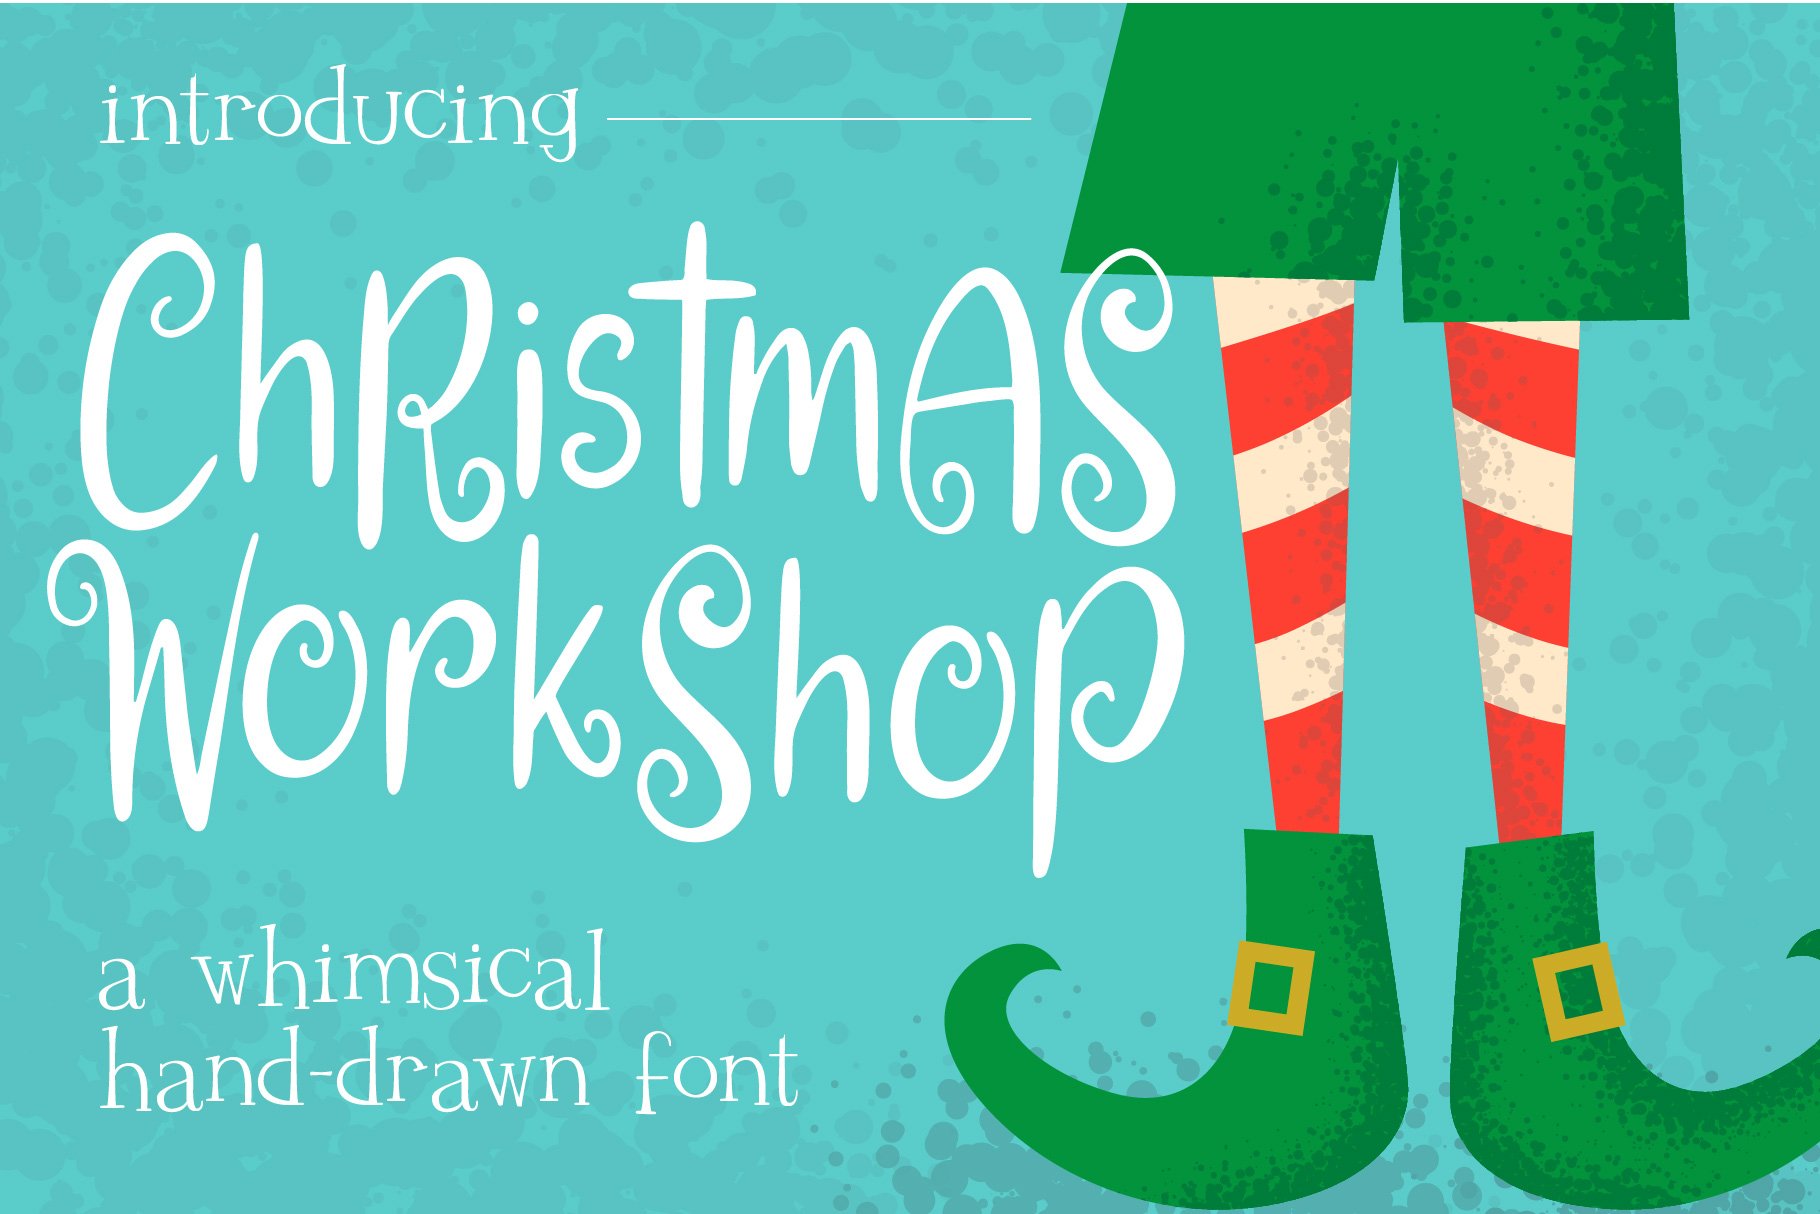 Christmas Workshop Font cover image.